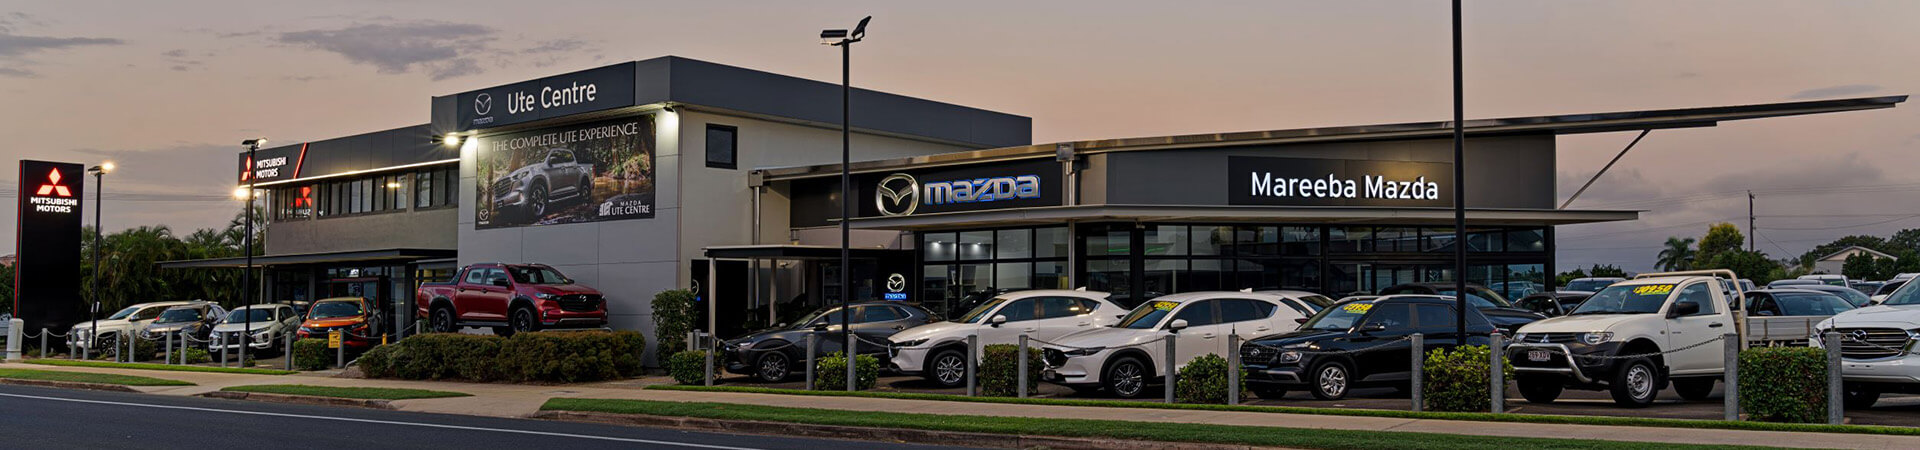 Mareeba Mazda and Mitsubishi